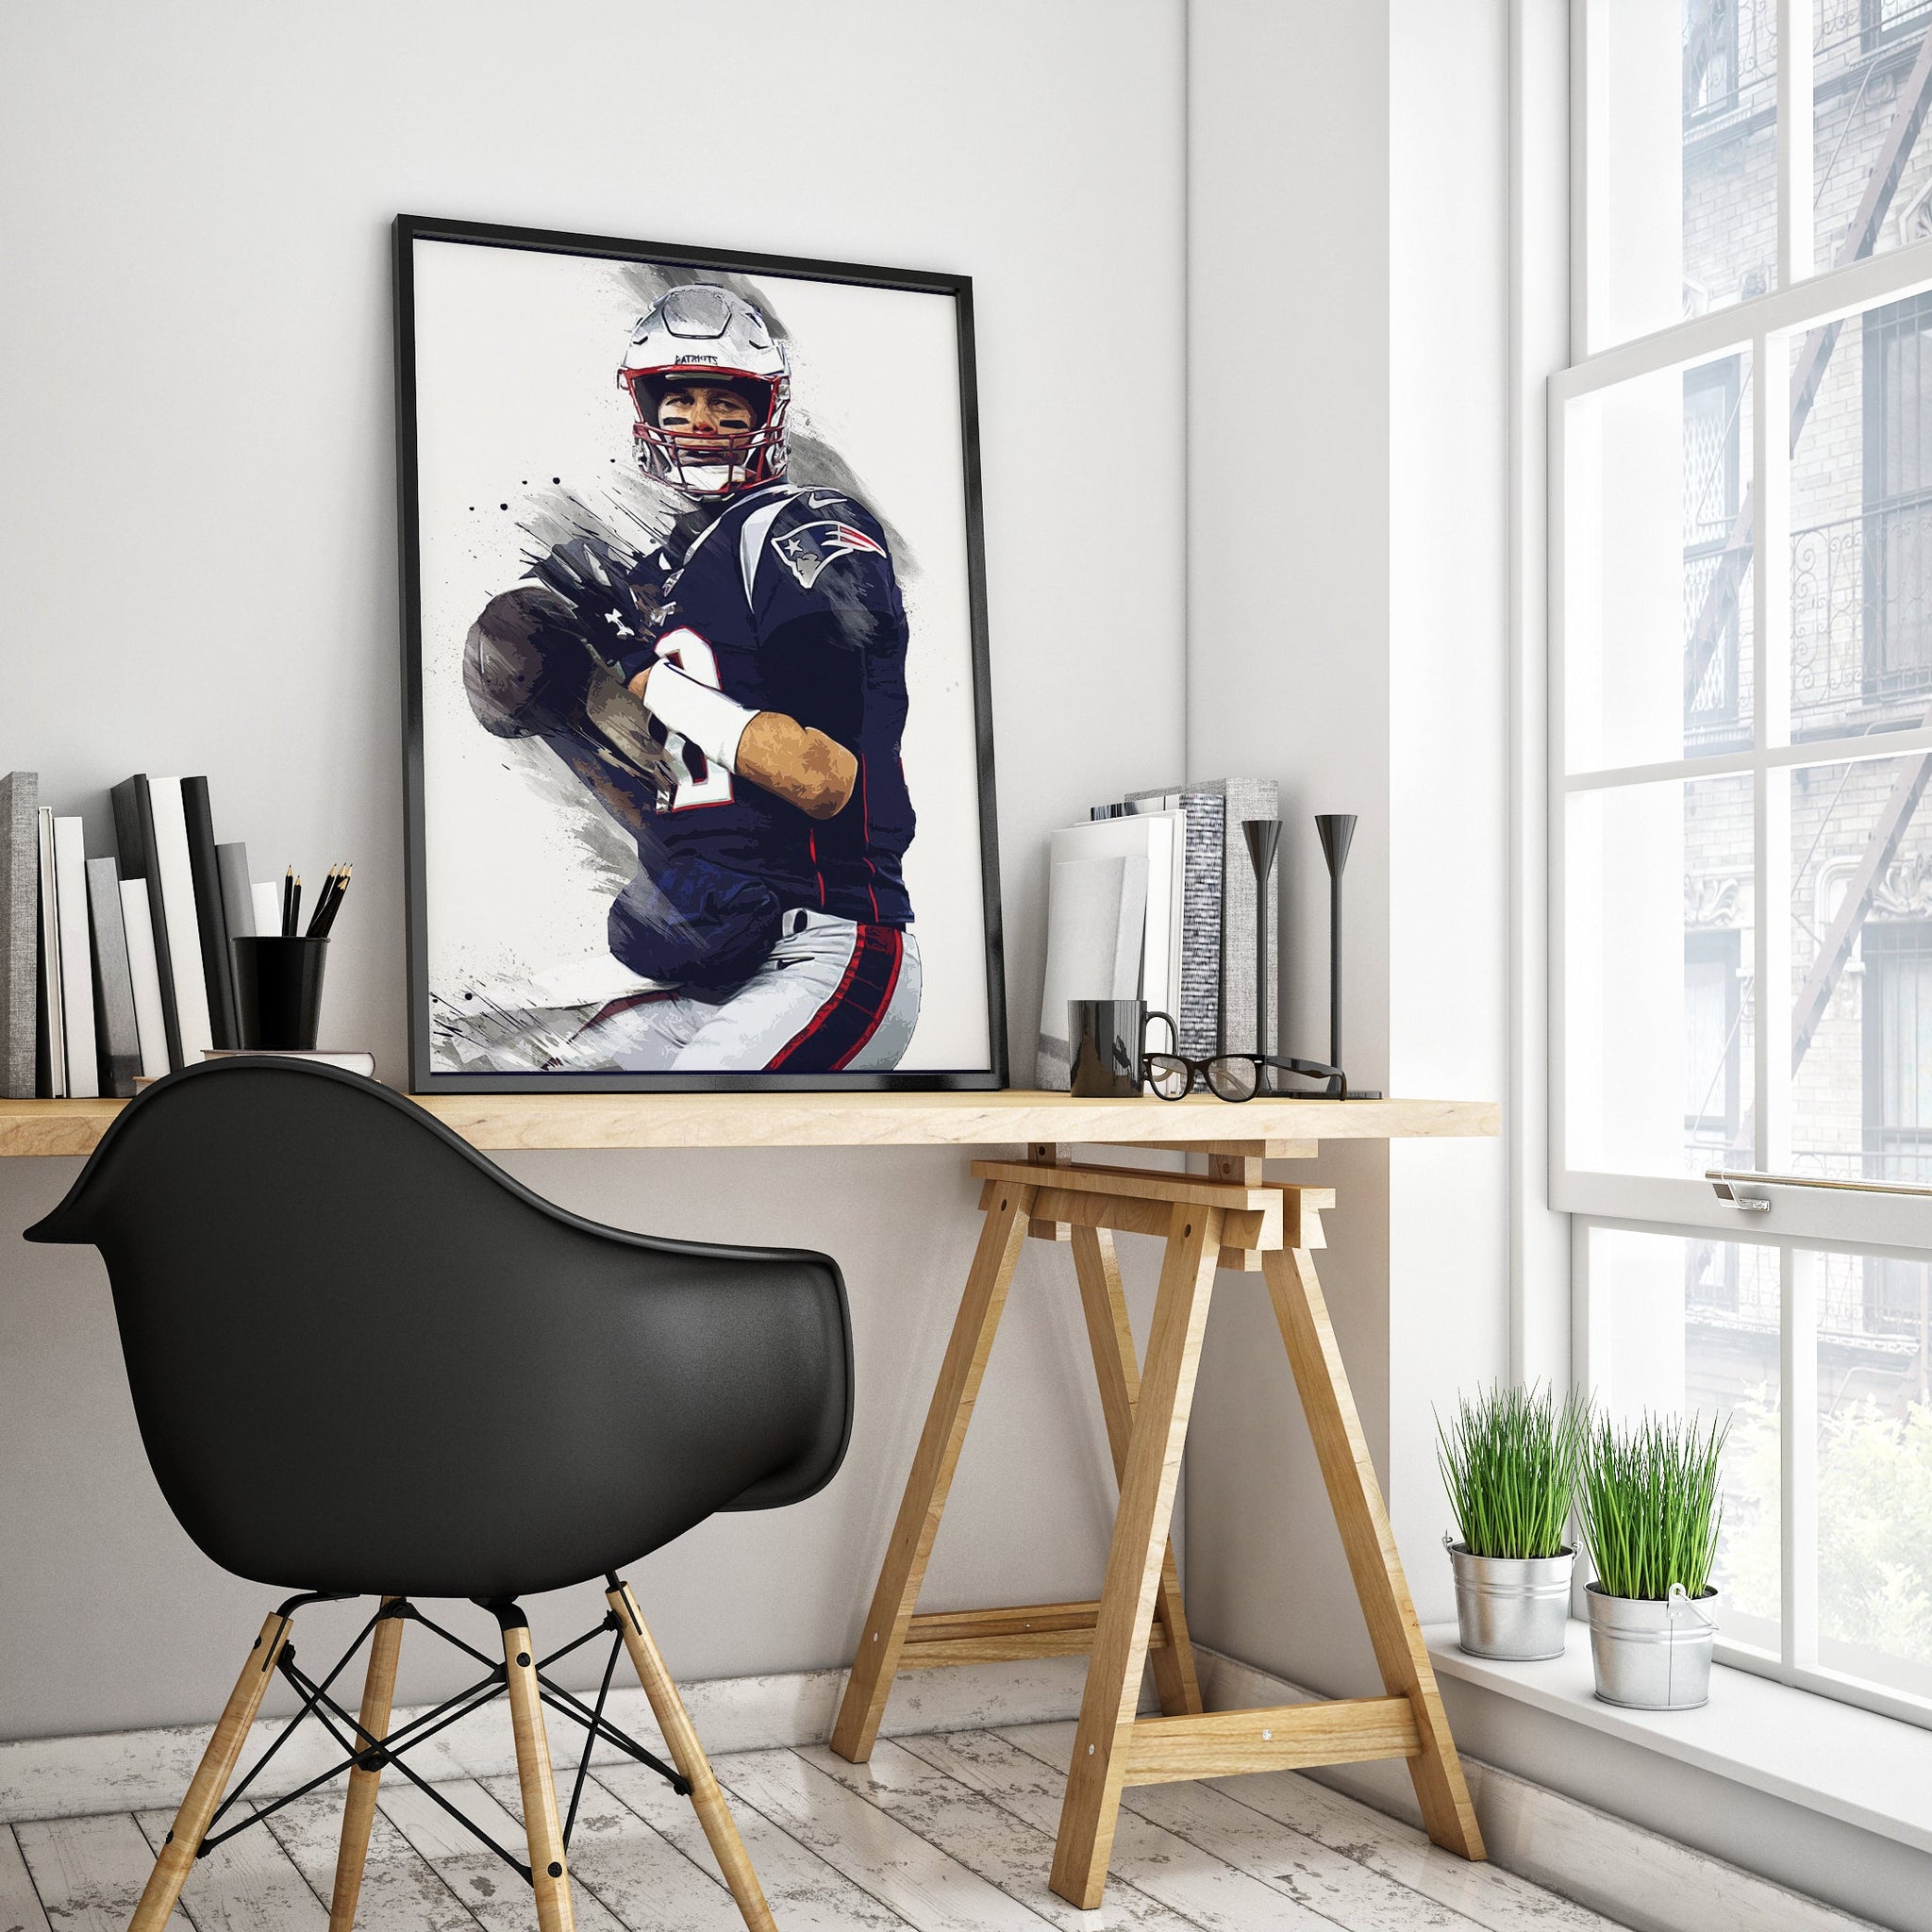 New England Patriots Tom Brady Legend Premium Poster - Team Spirit Store USA 